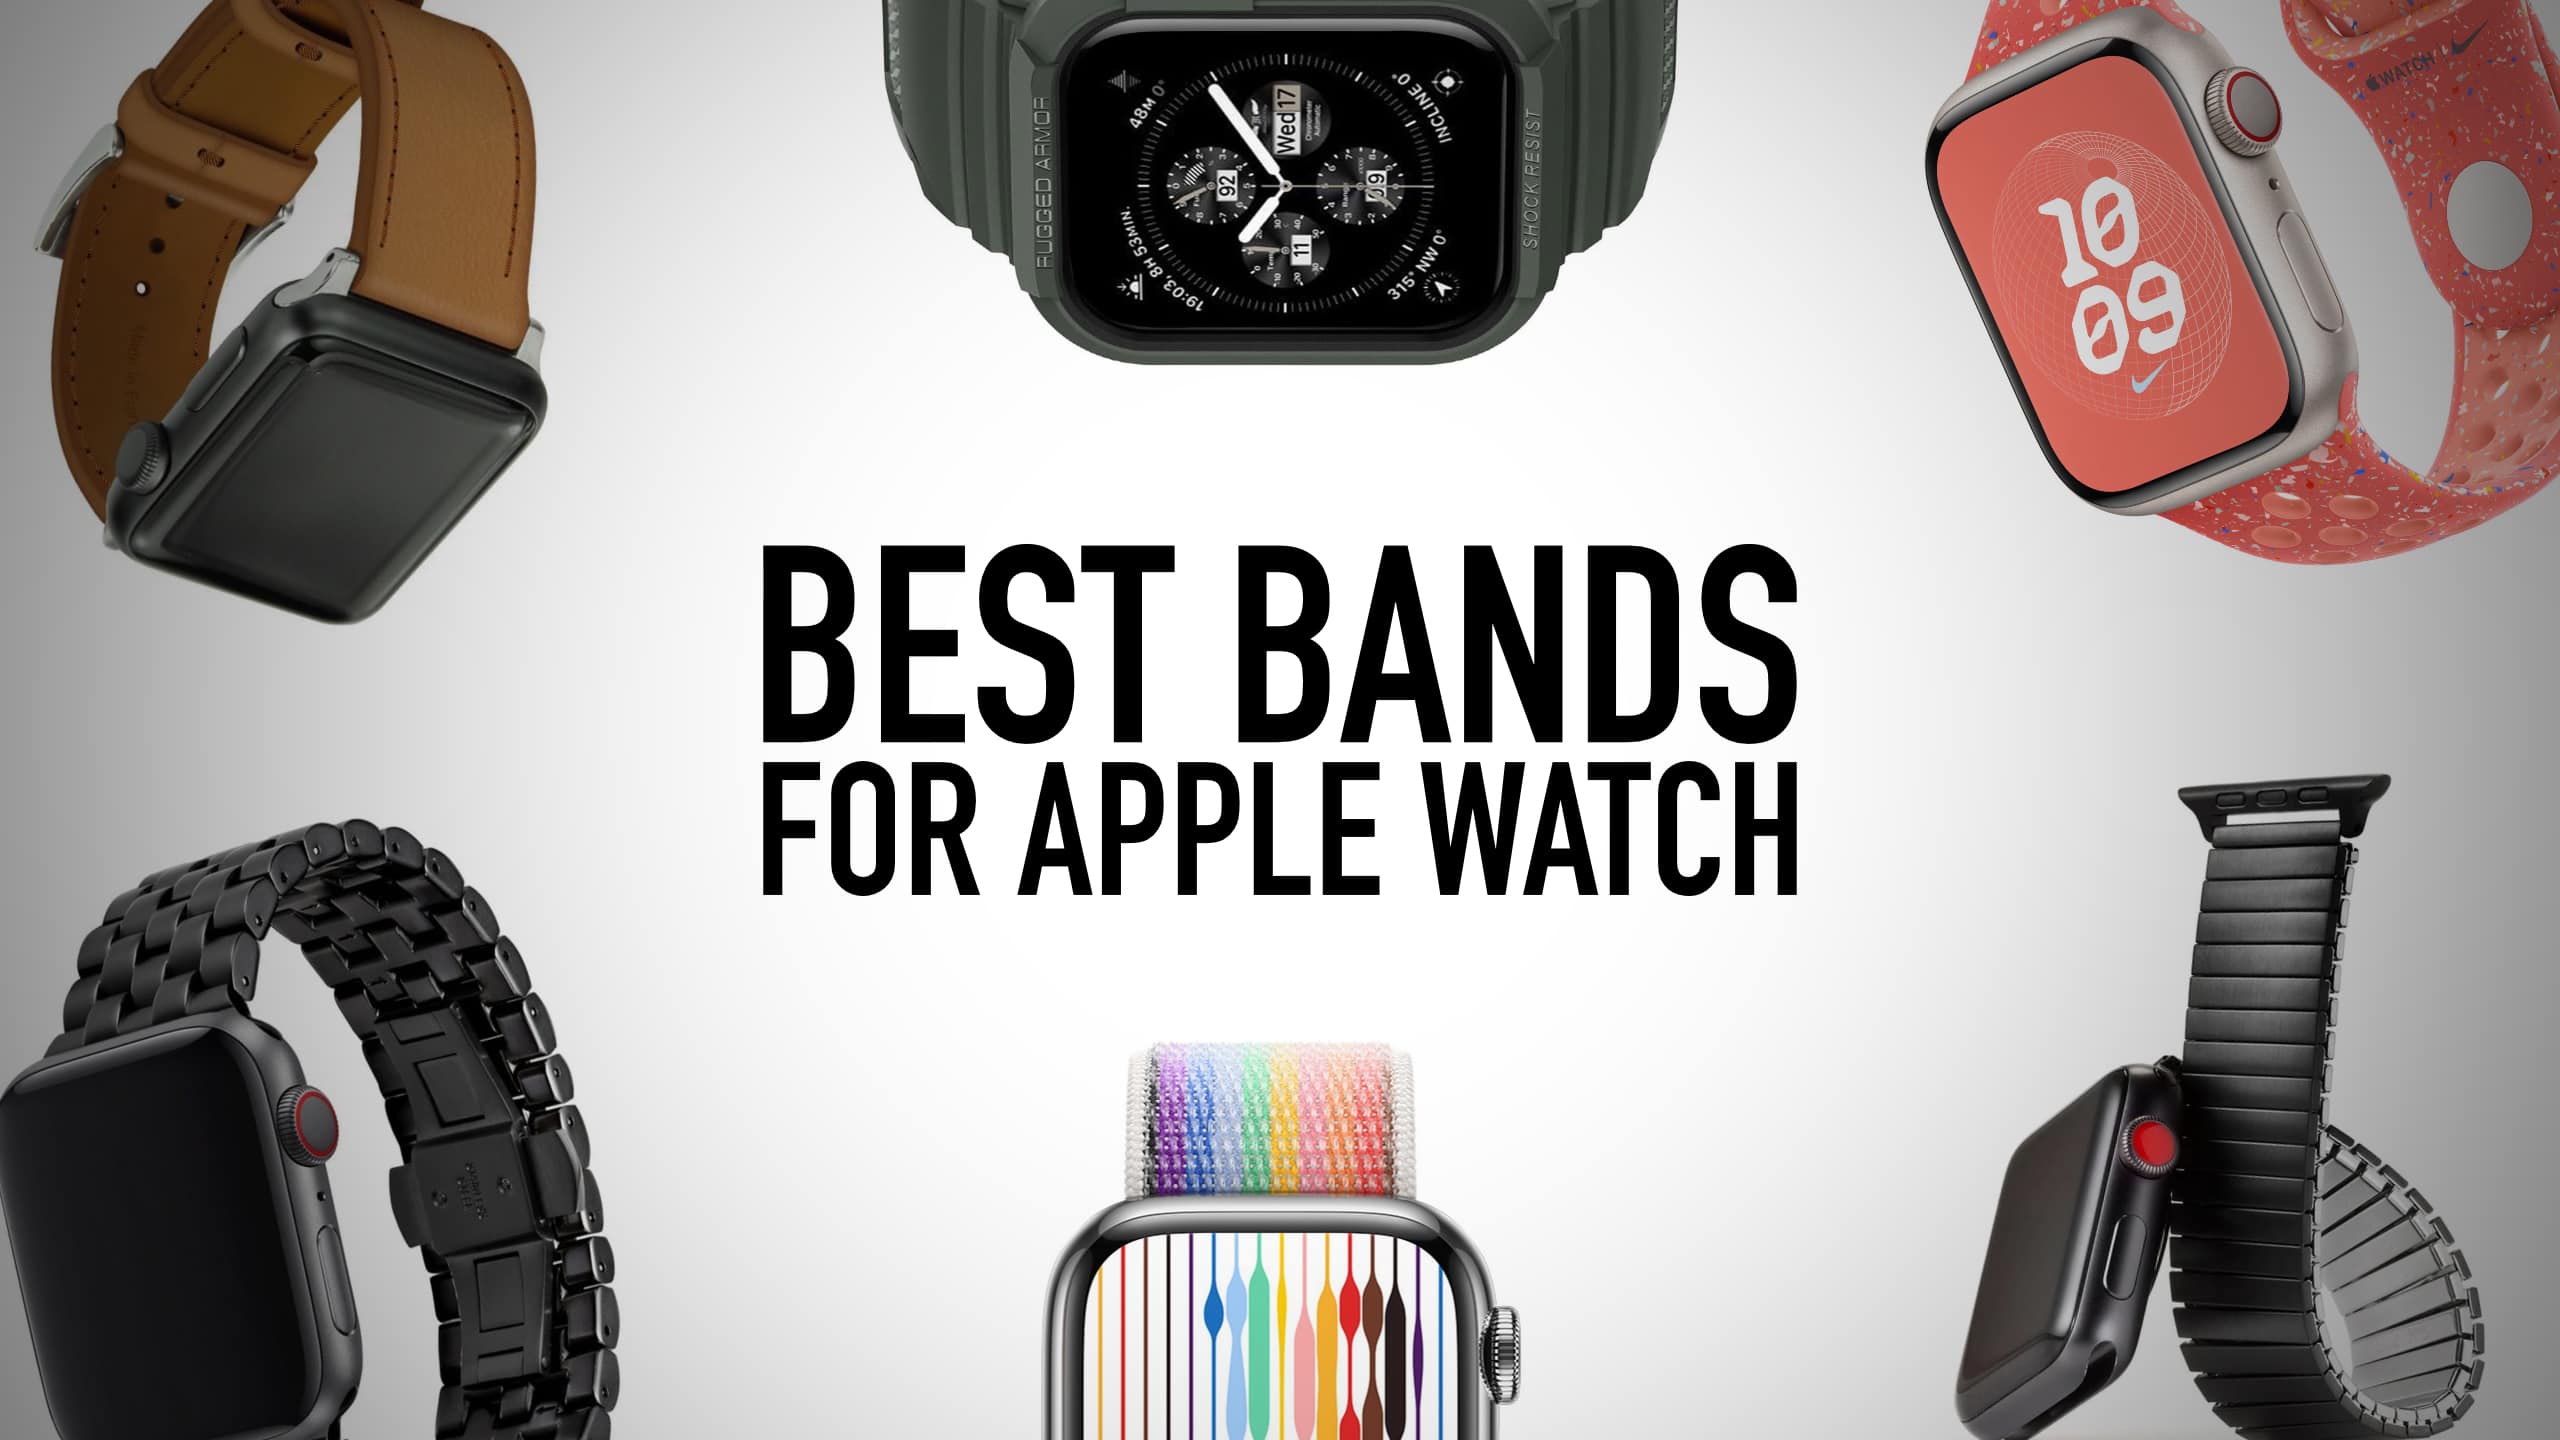 JUUK Qrono Apple Watch Band